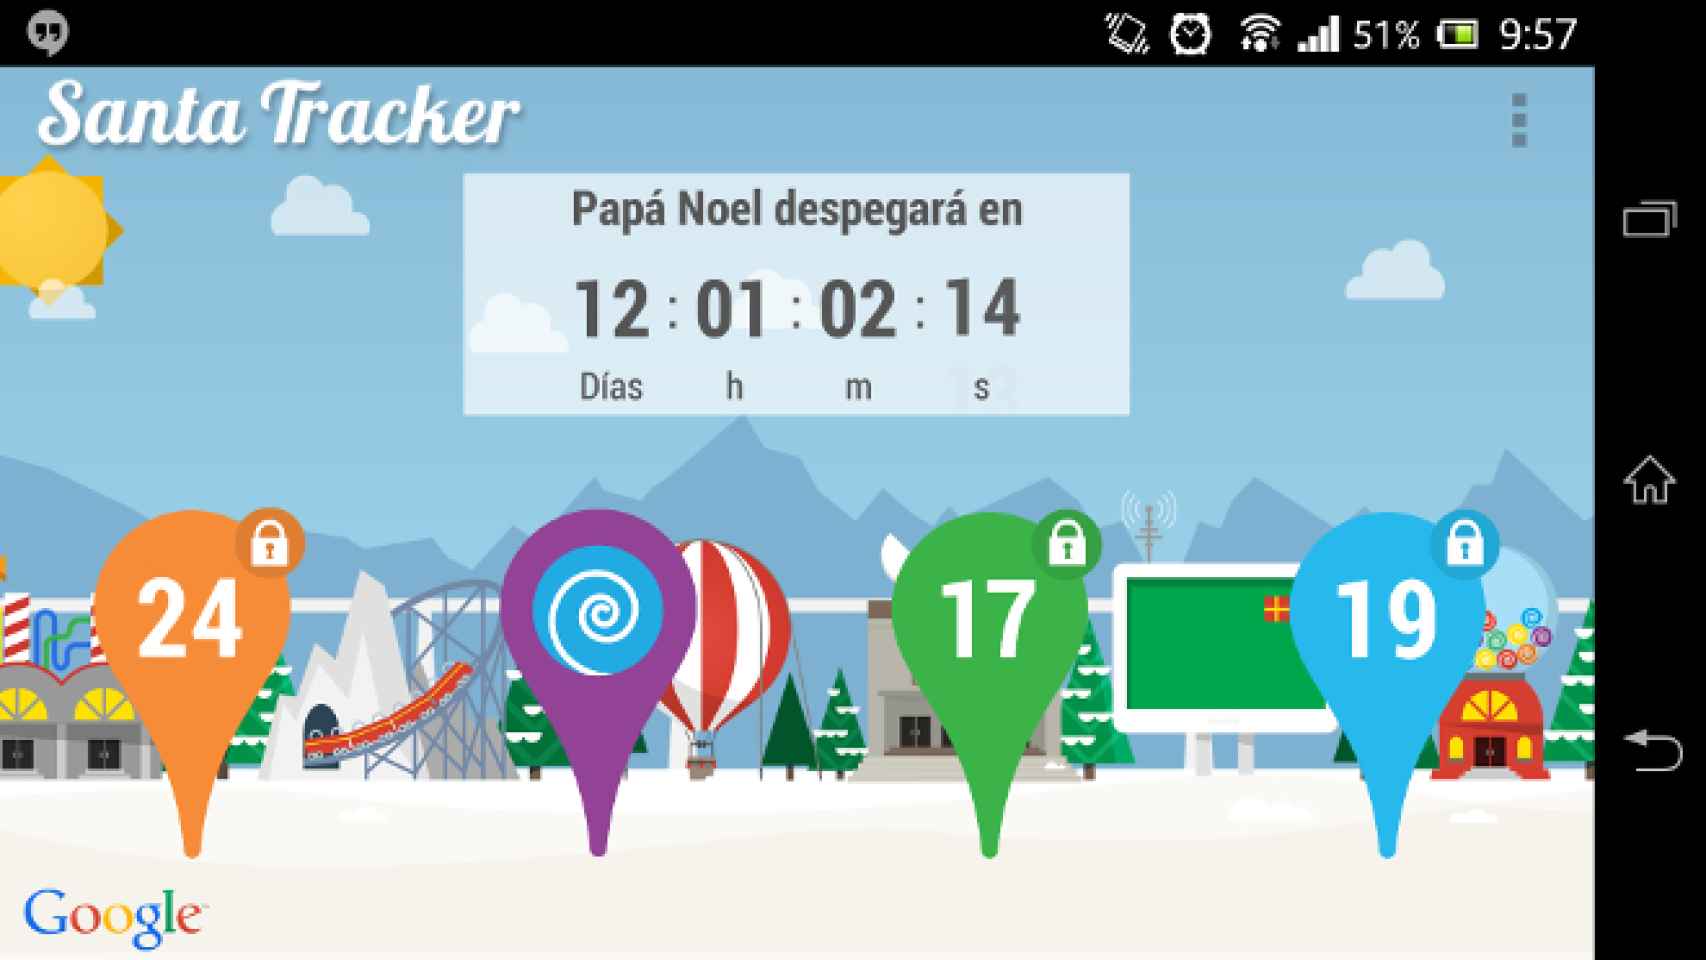 Santa Tracker ya disponible para Android, sigue a Papá Noel y prueba mini-juegos esperando la Navidad